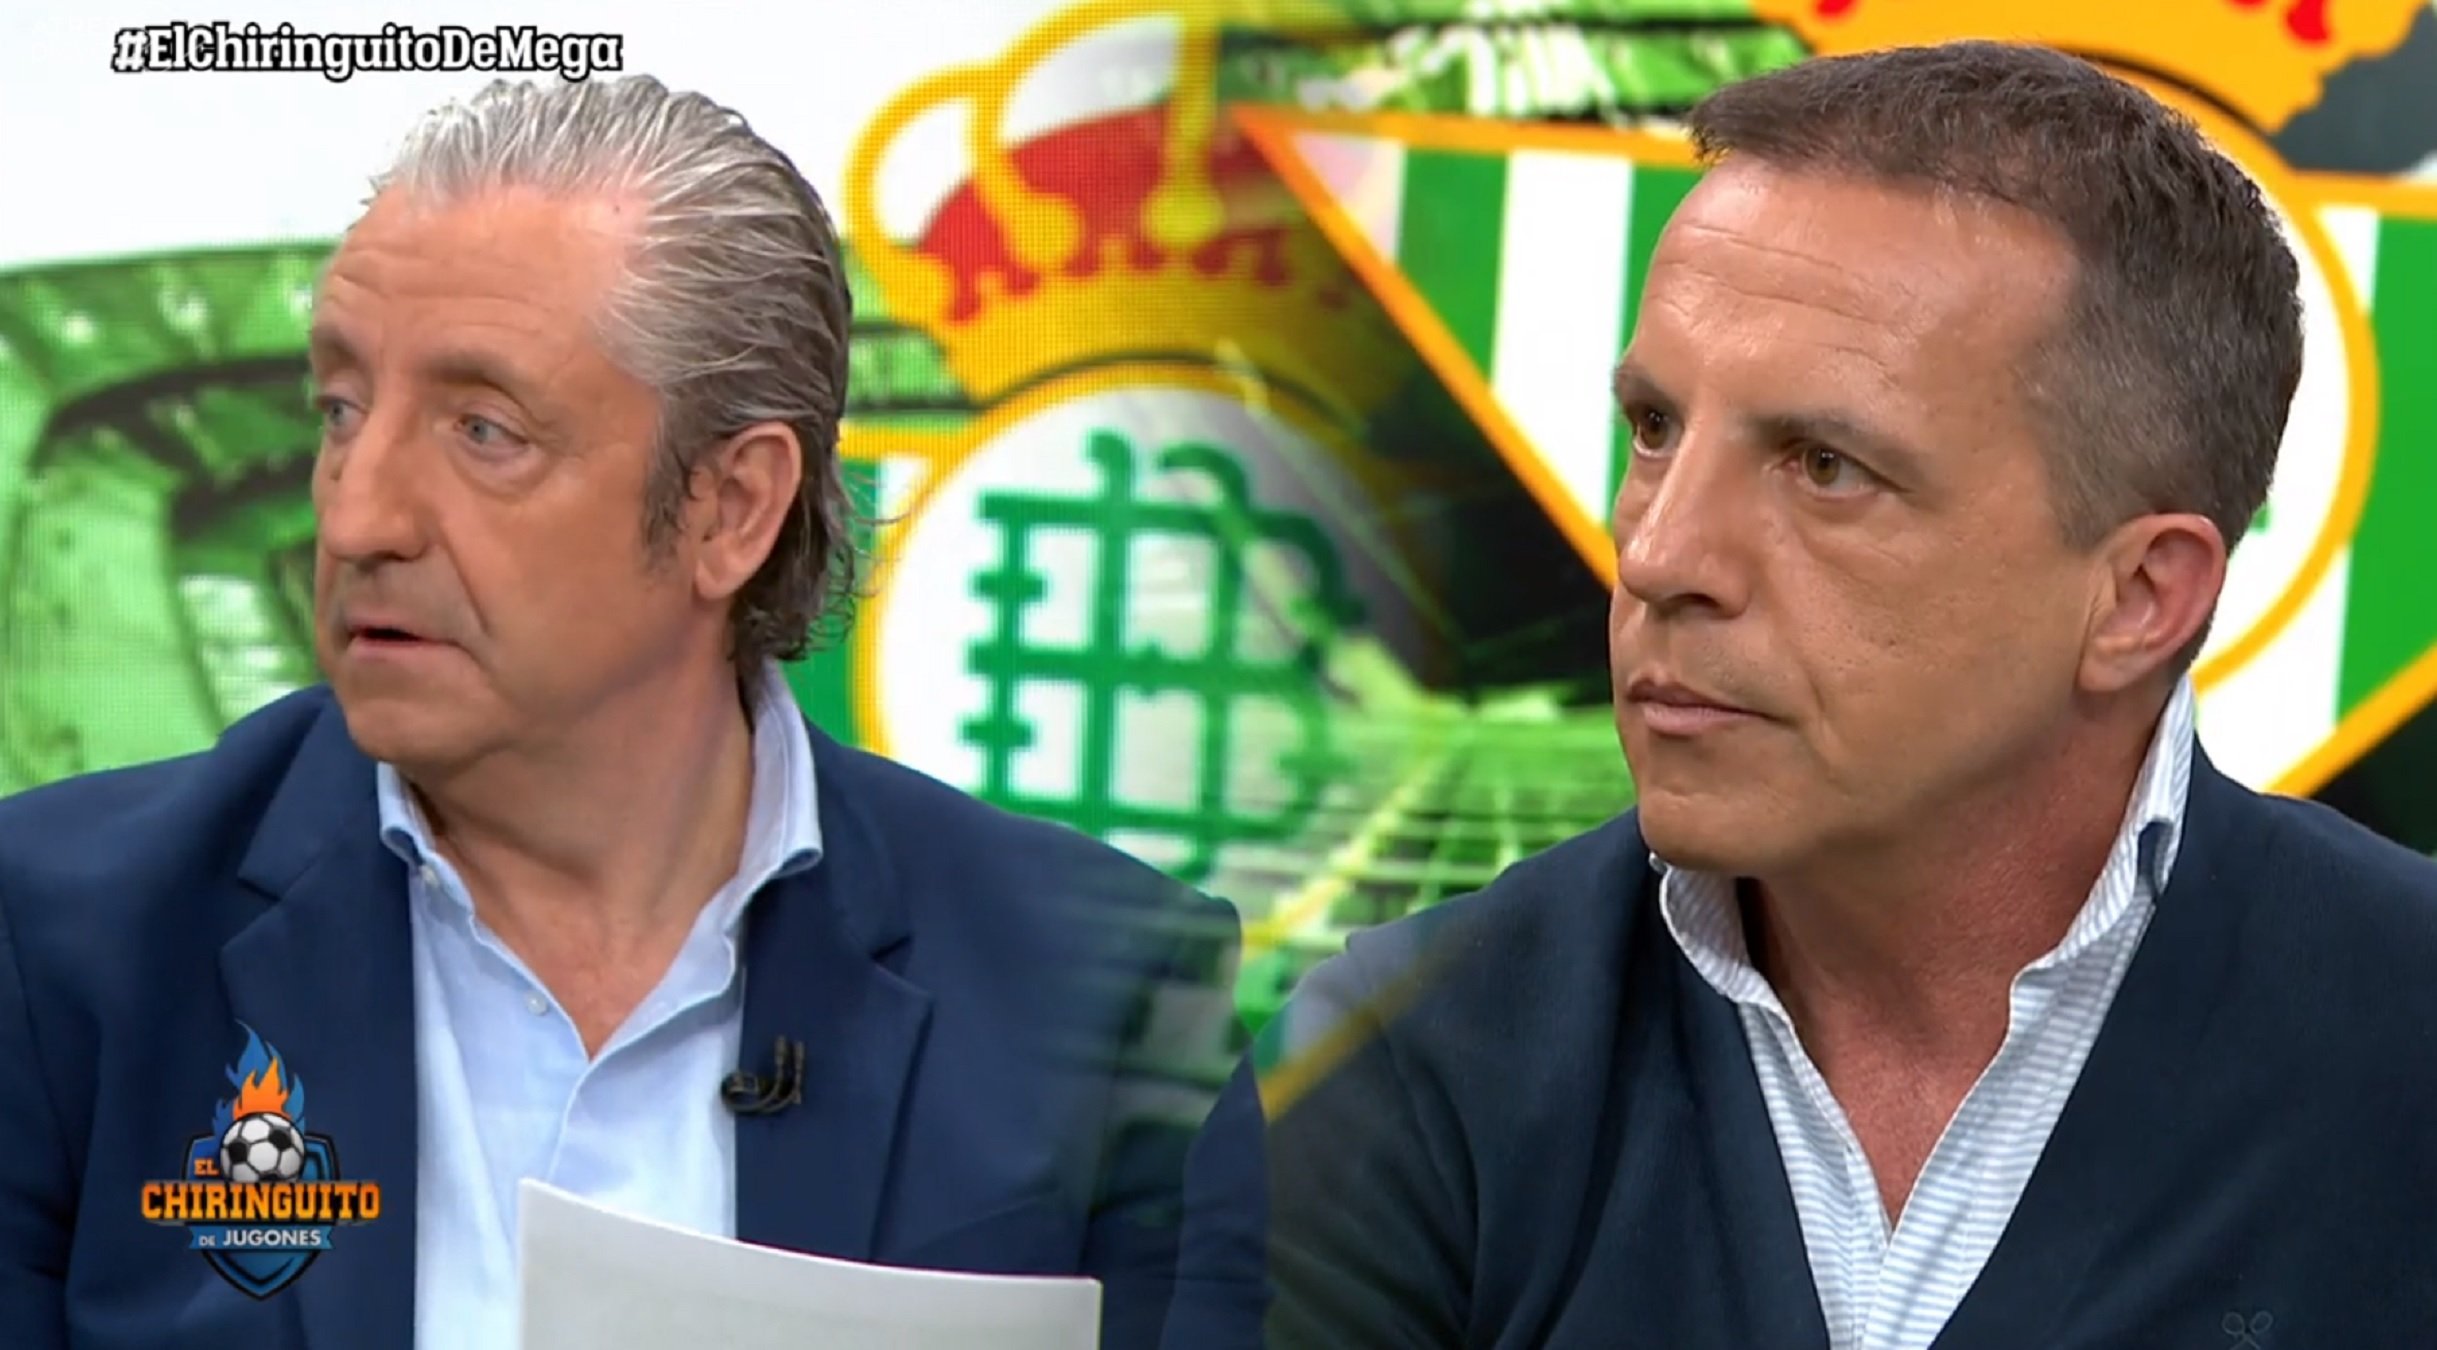 Quants diners cobren Josep Pedrerol i Cristóbal Soria per fer 'El Chiringuito'?